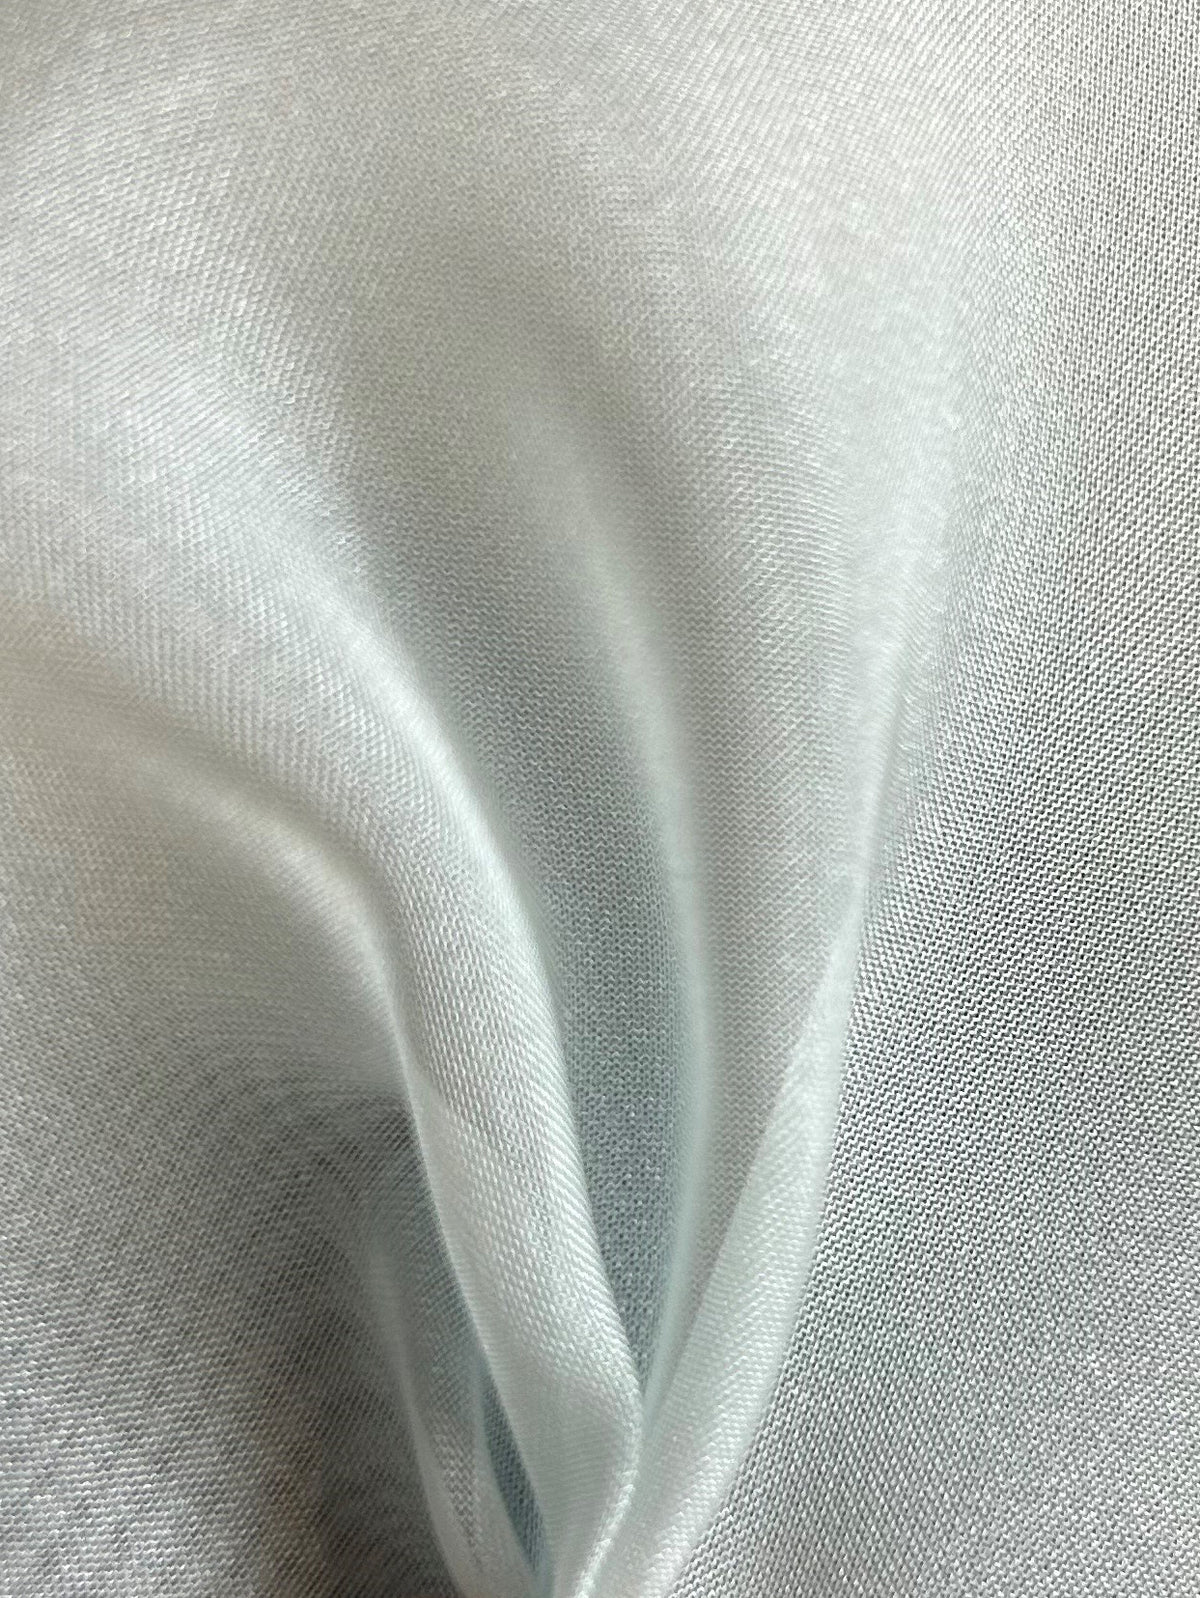 Himmelblauer Polyester-Chiffon – Ehrlichkeit